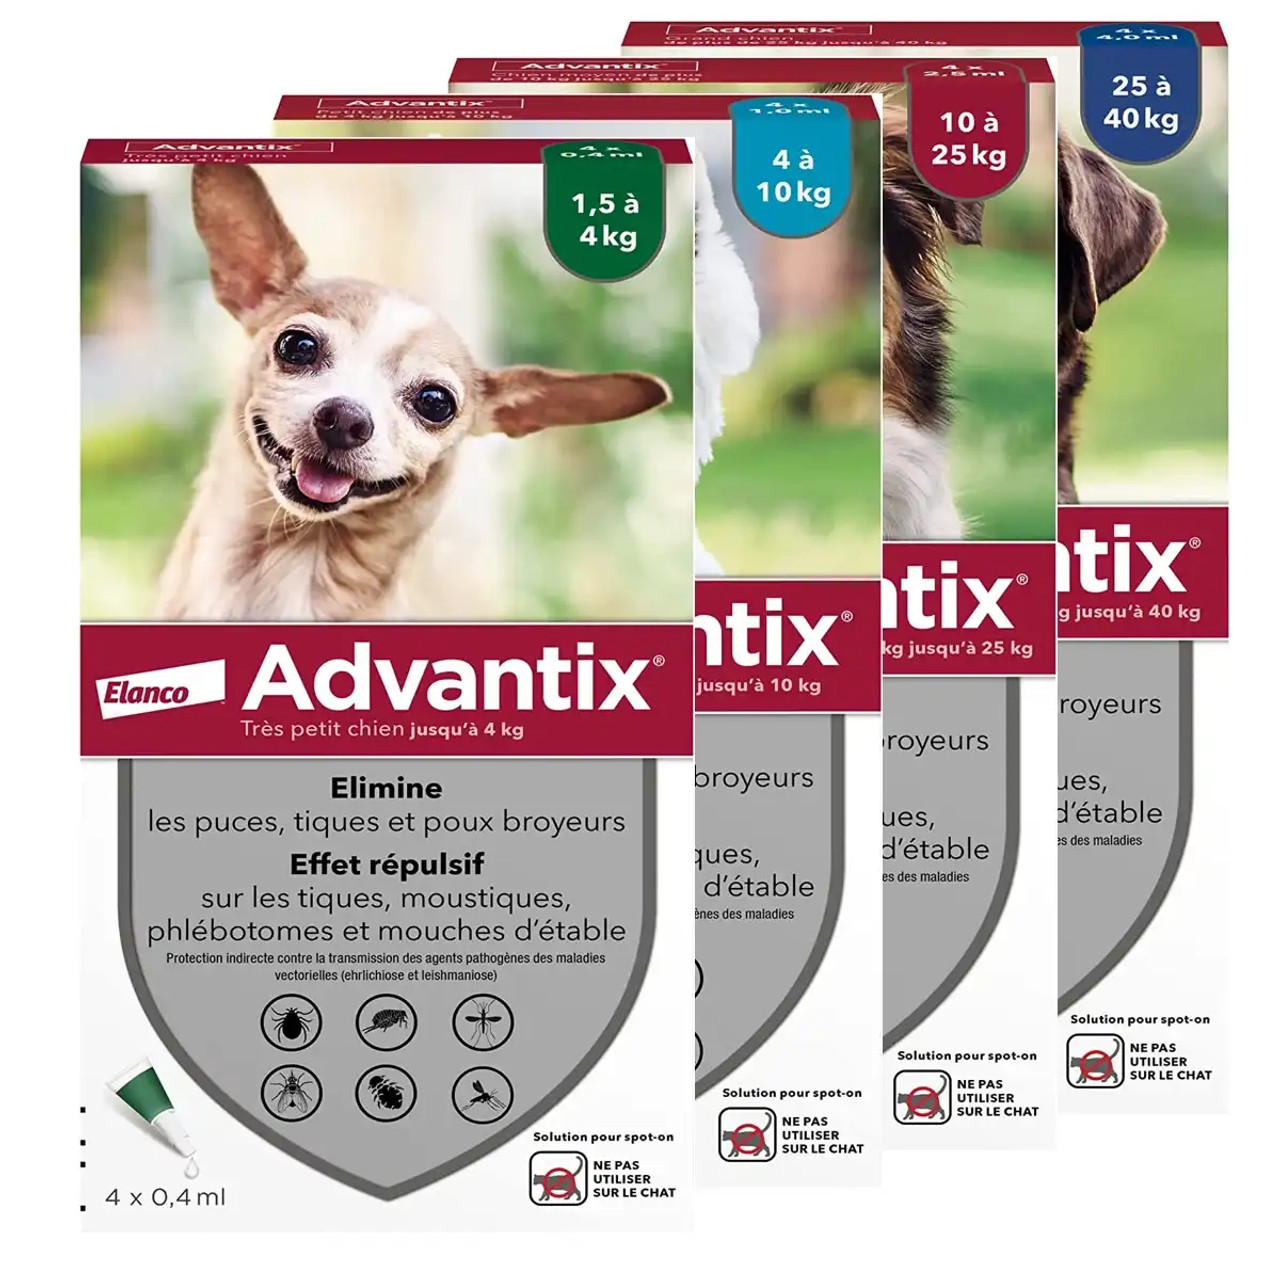 20% הנחה על Advantix לכלבים באטלנטיק מוצרים לחיות מחמד